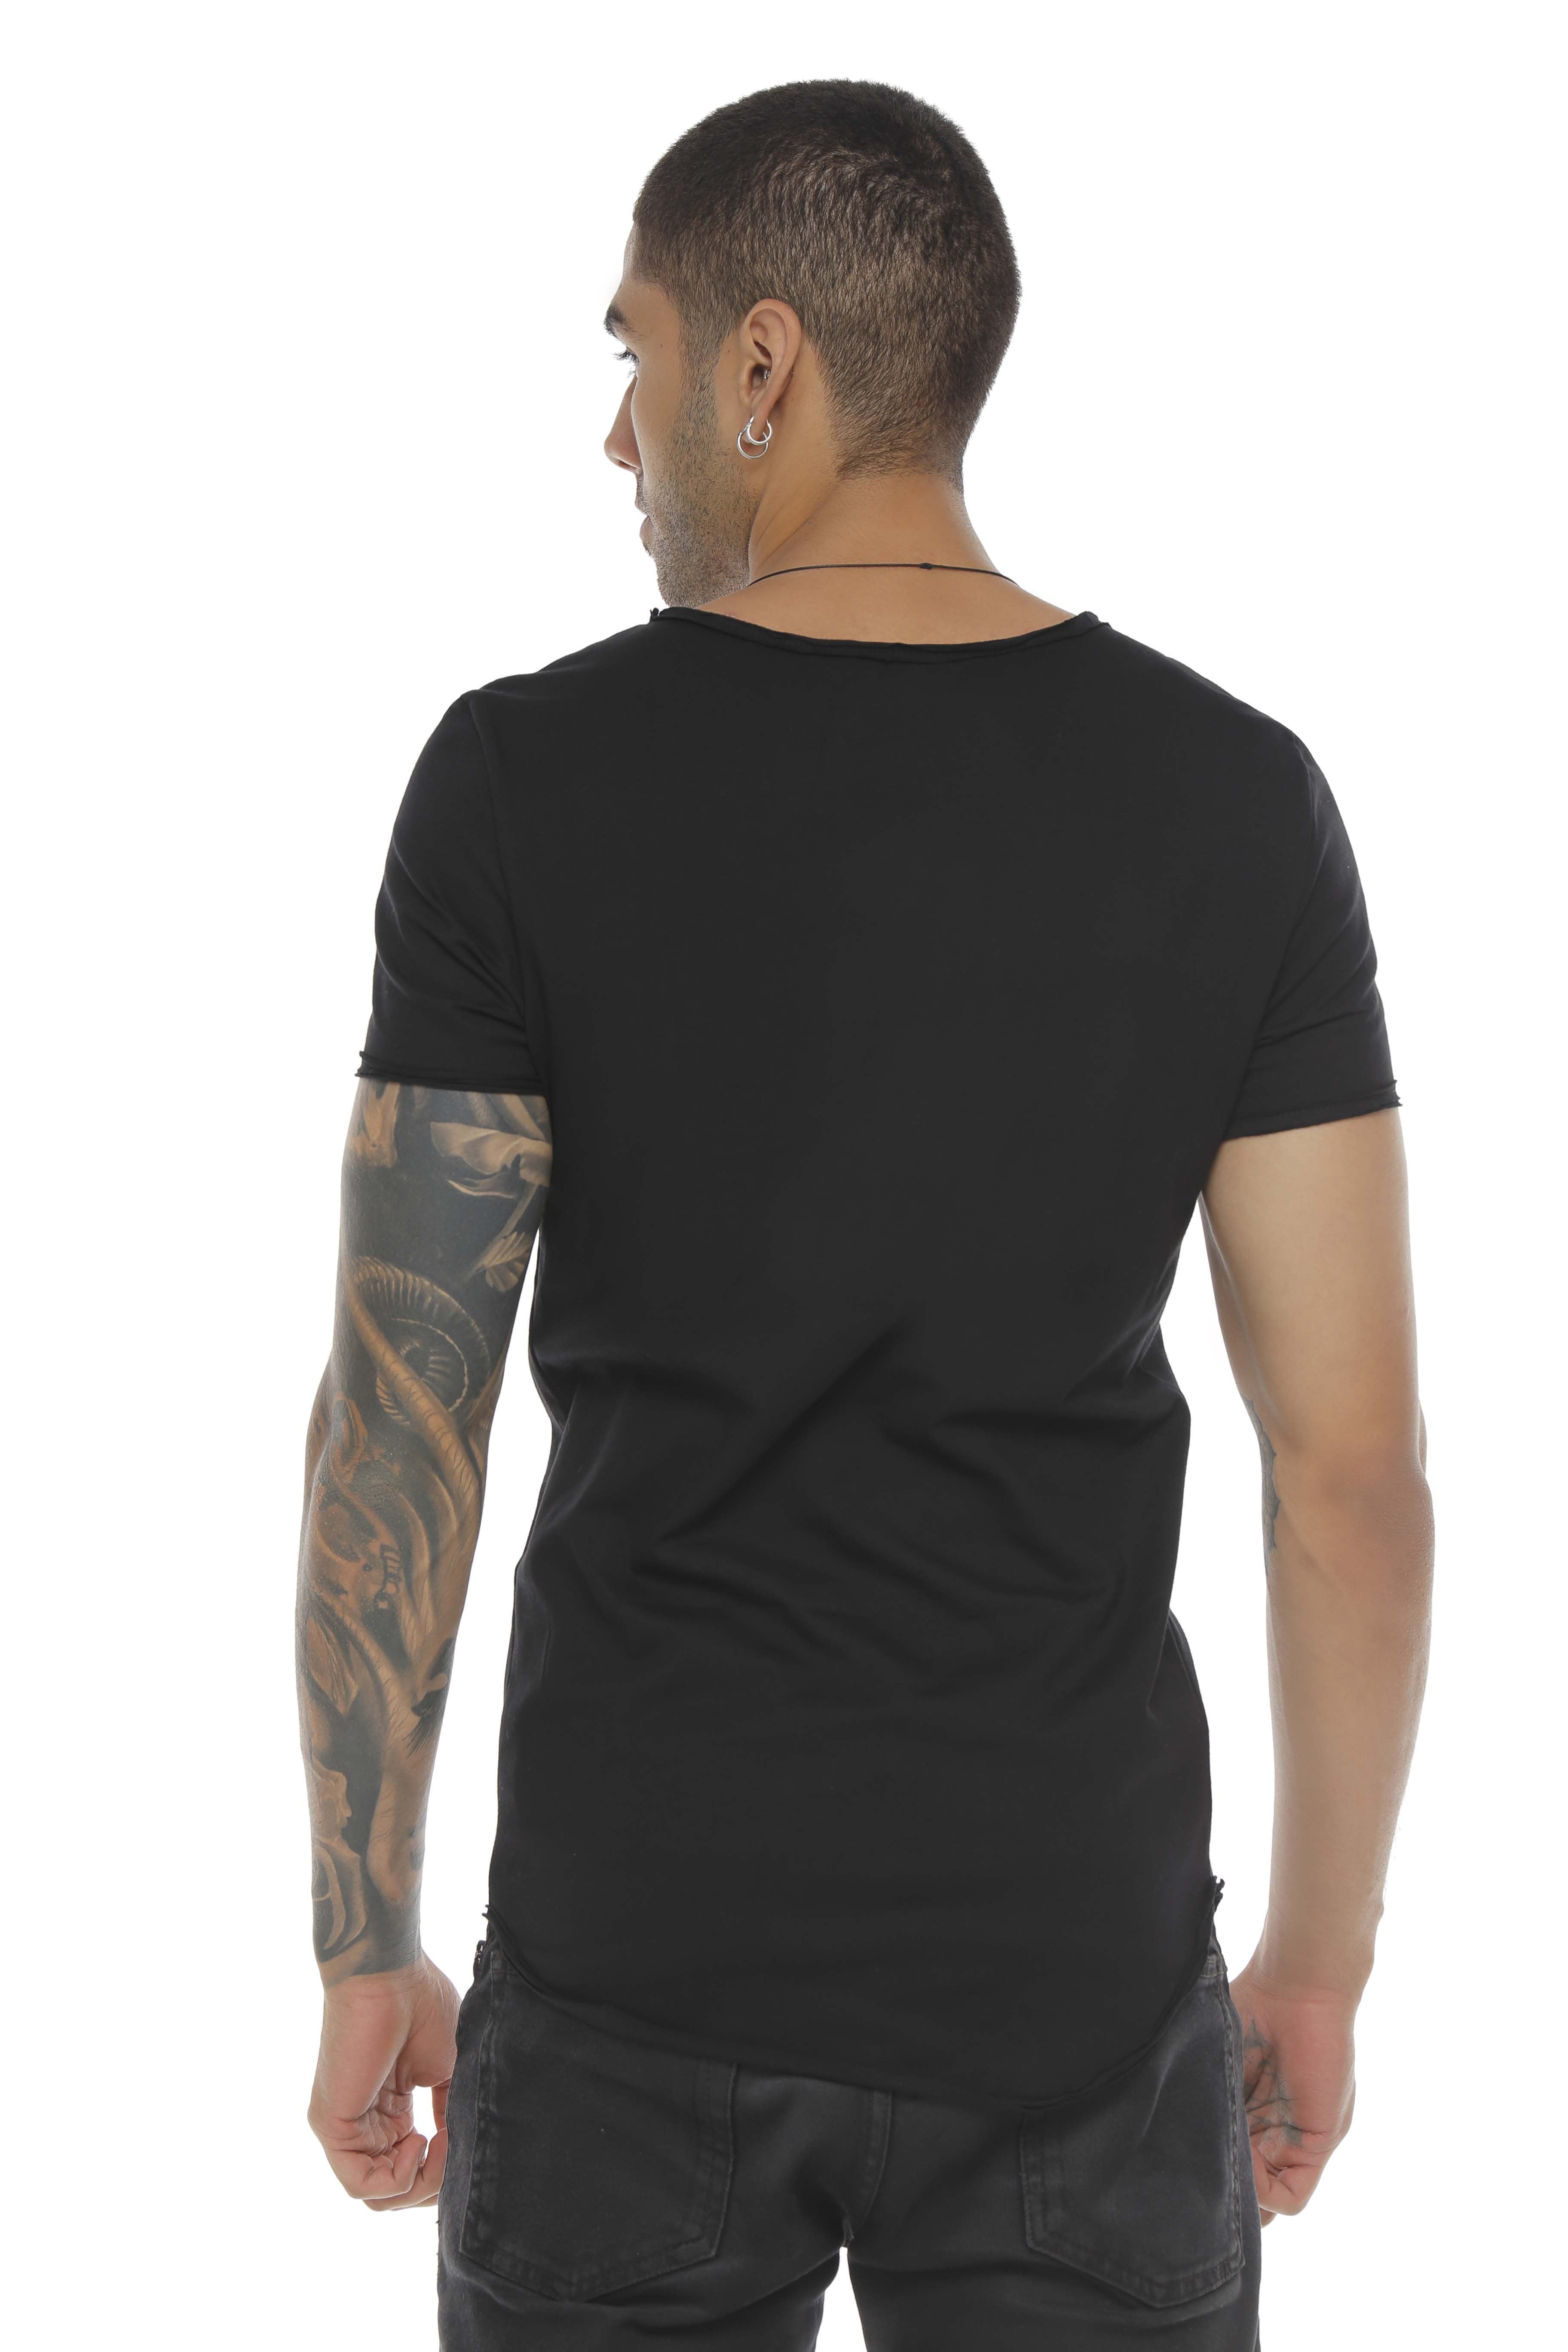 Camiseta Vazzic 100% algodón deportiva para Hombre 